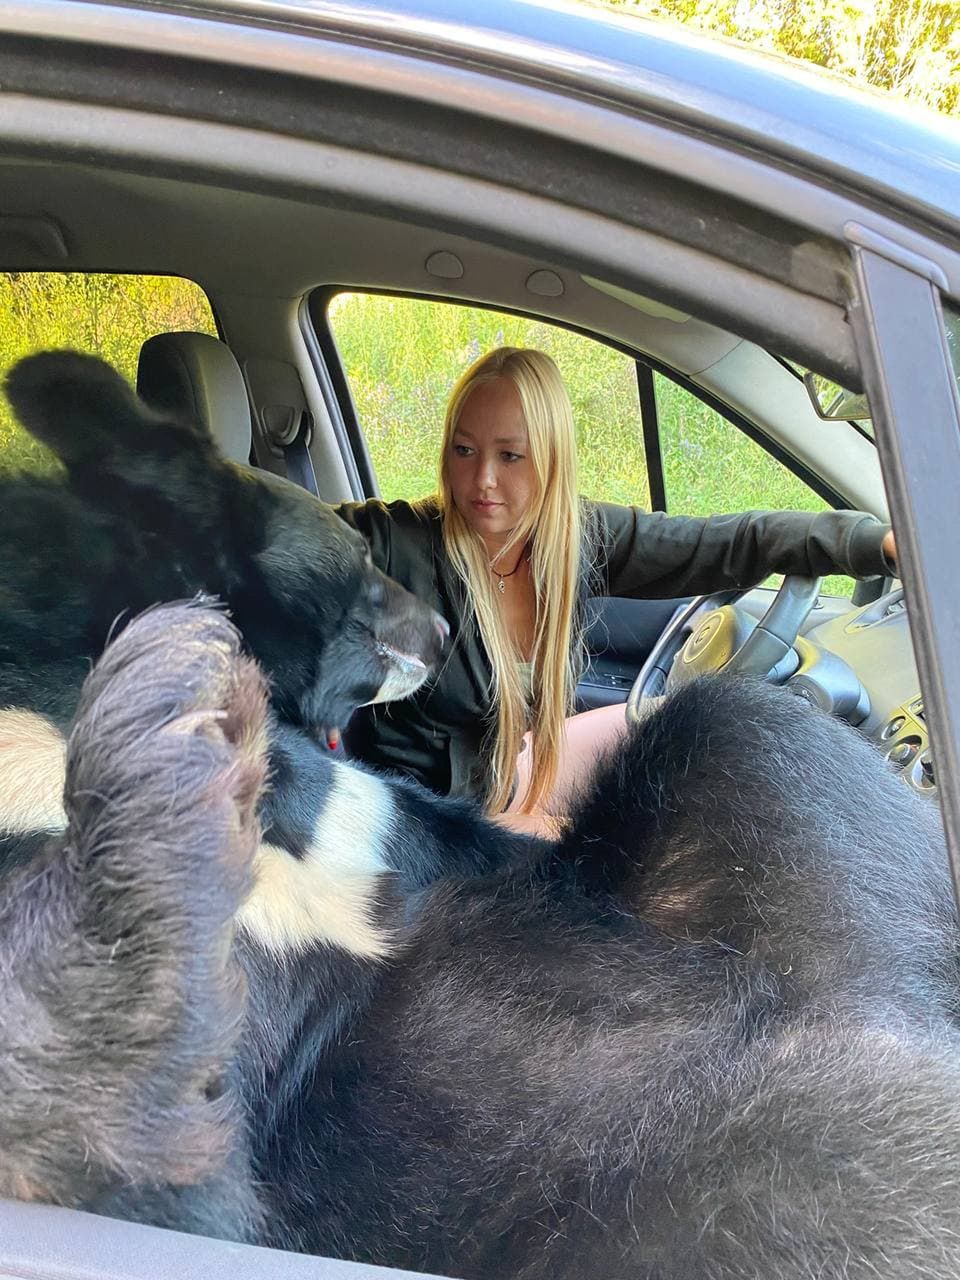 Imagini uimitoare din Rusia: O tânără călătorește în mașină cu un urs